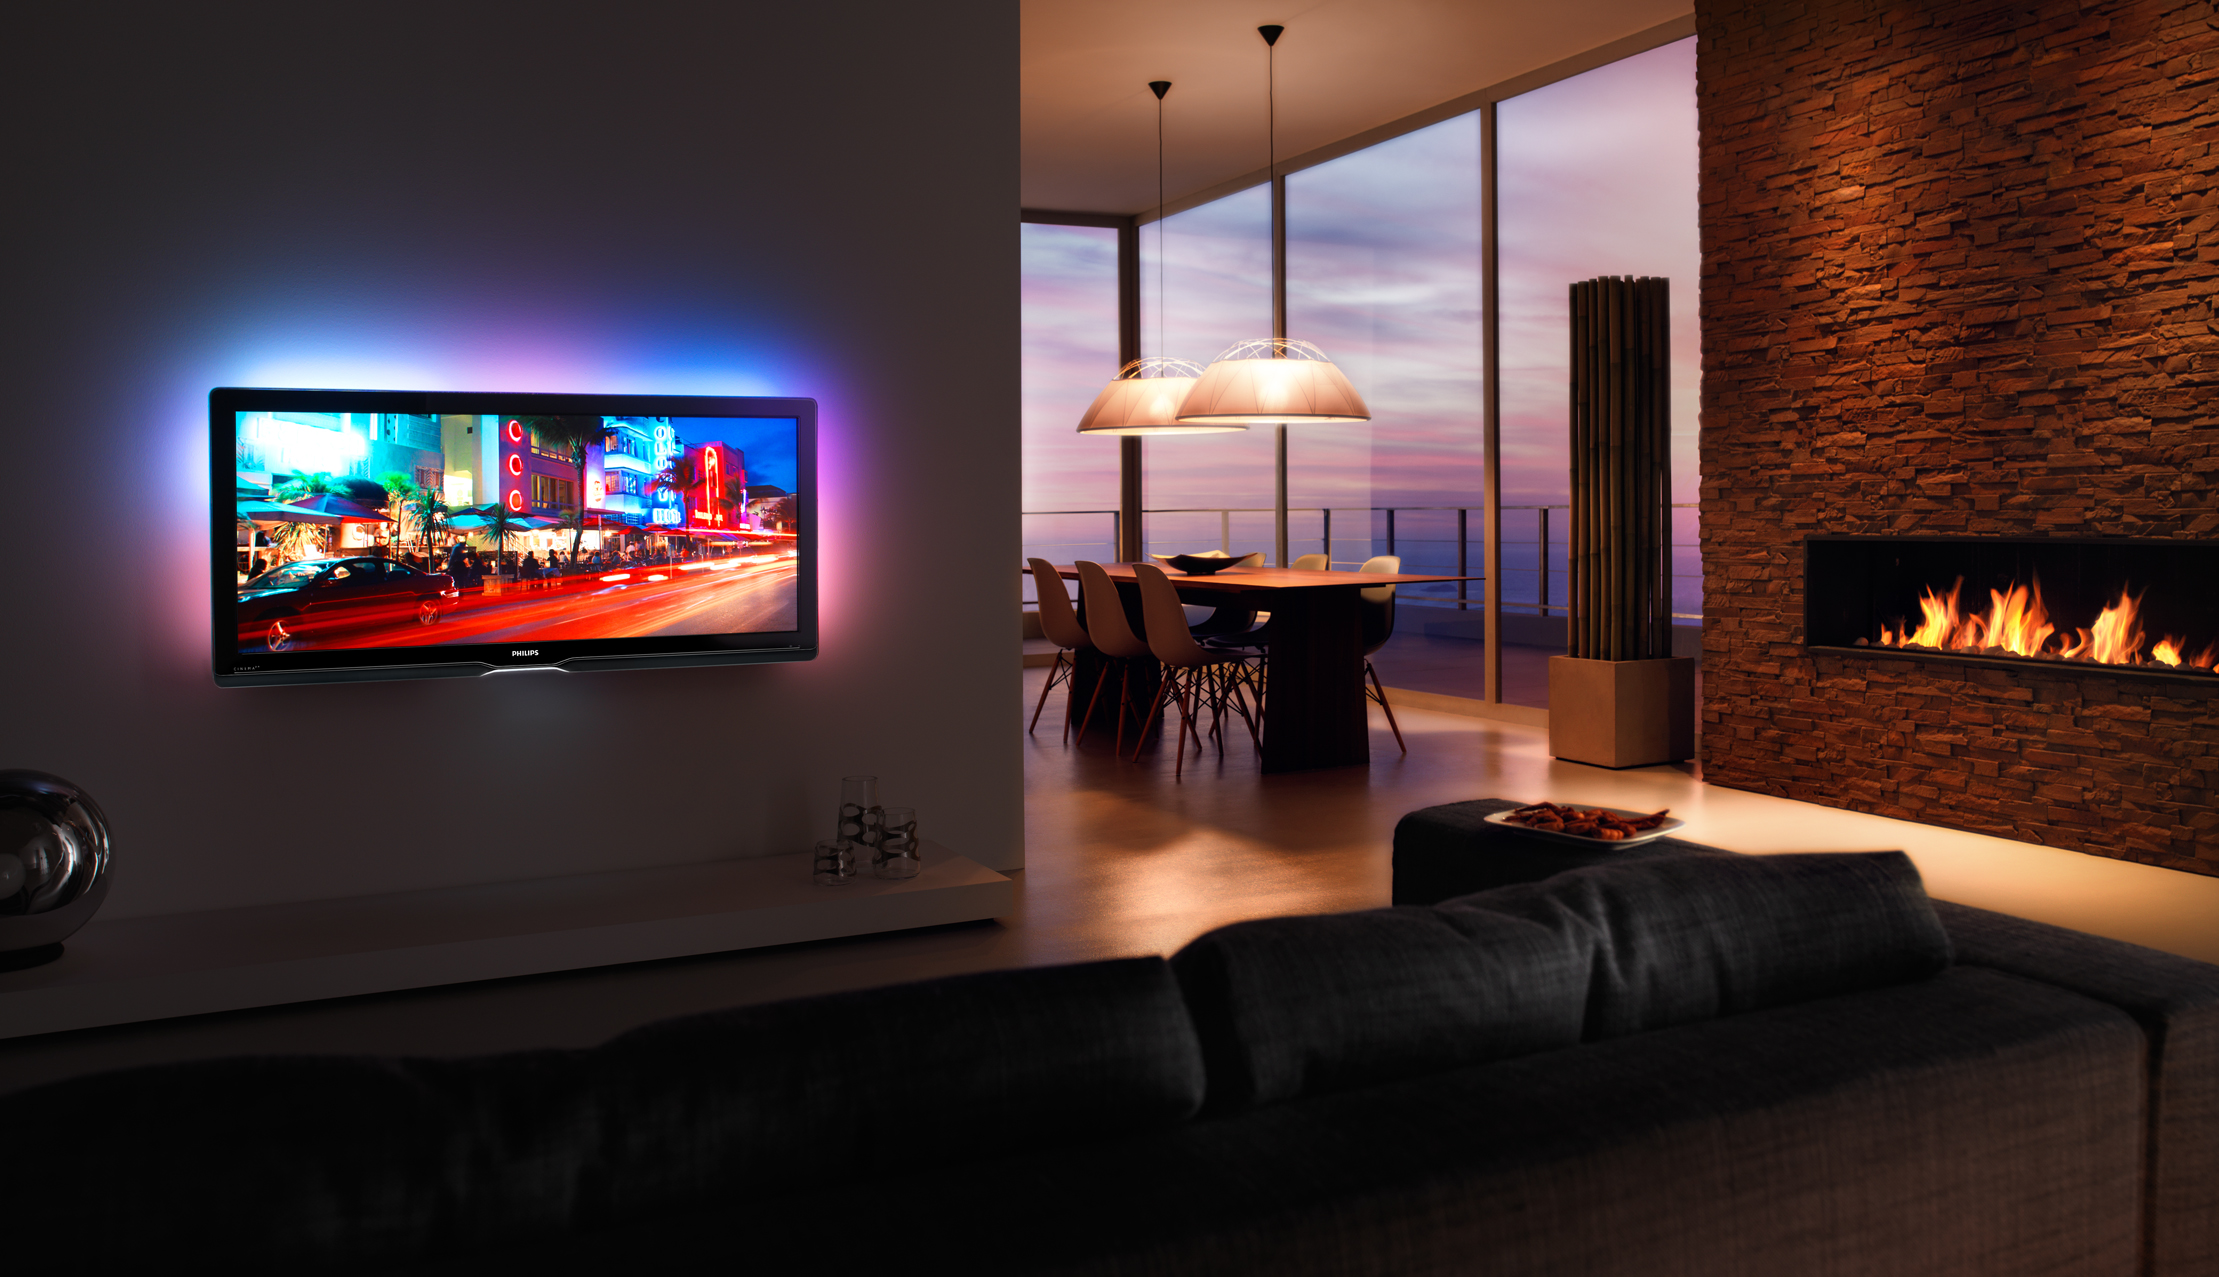 Телевизор в 5 часов. Телевизор Philips Cinema 21 9 TV. Филипс плазма с подсветкой. Телевизор в интерьере. Плазменный телевизор на стене.